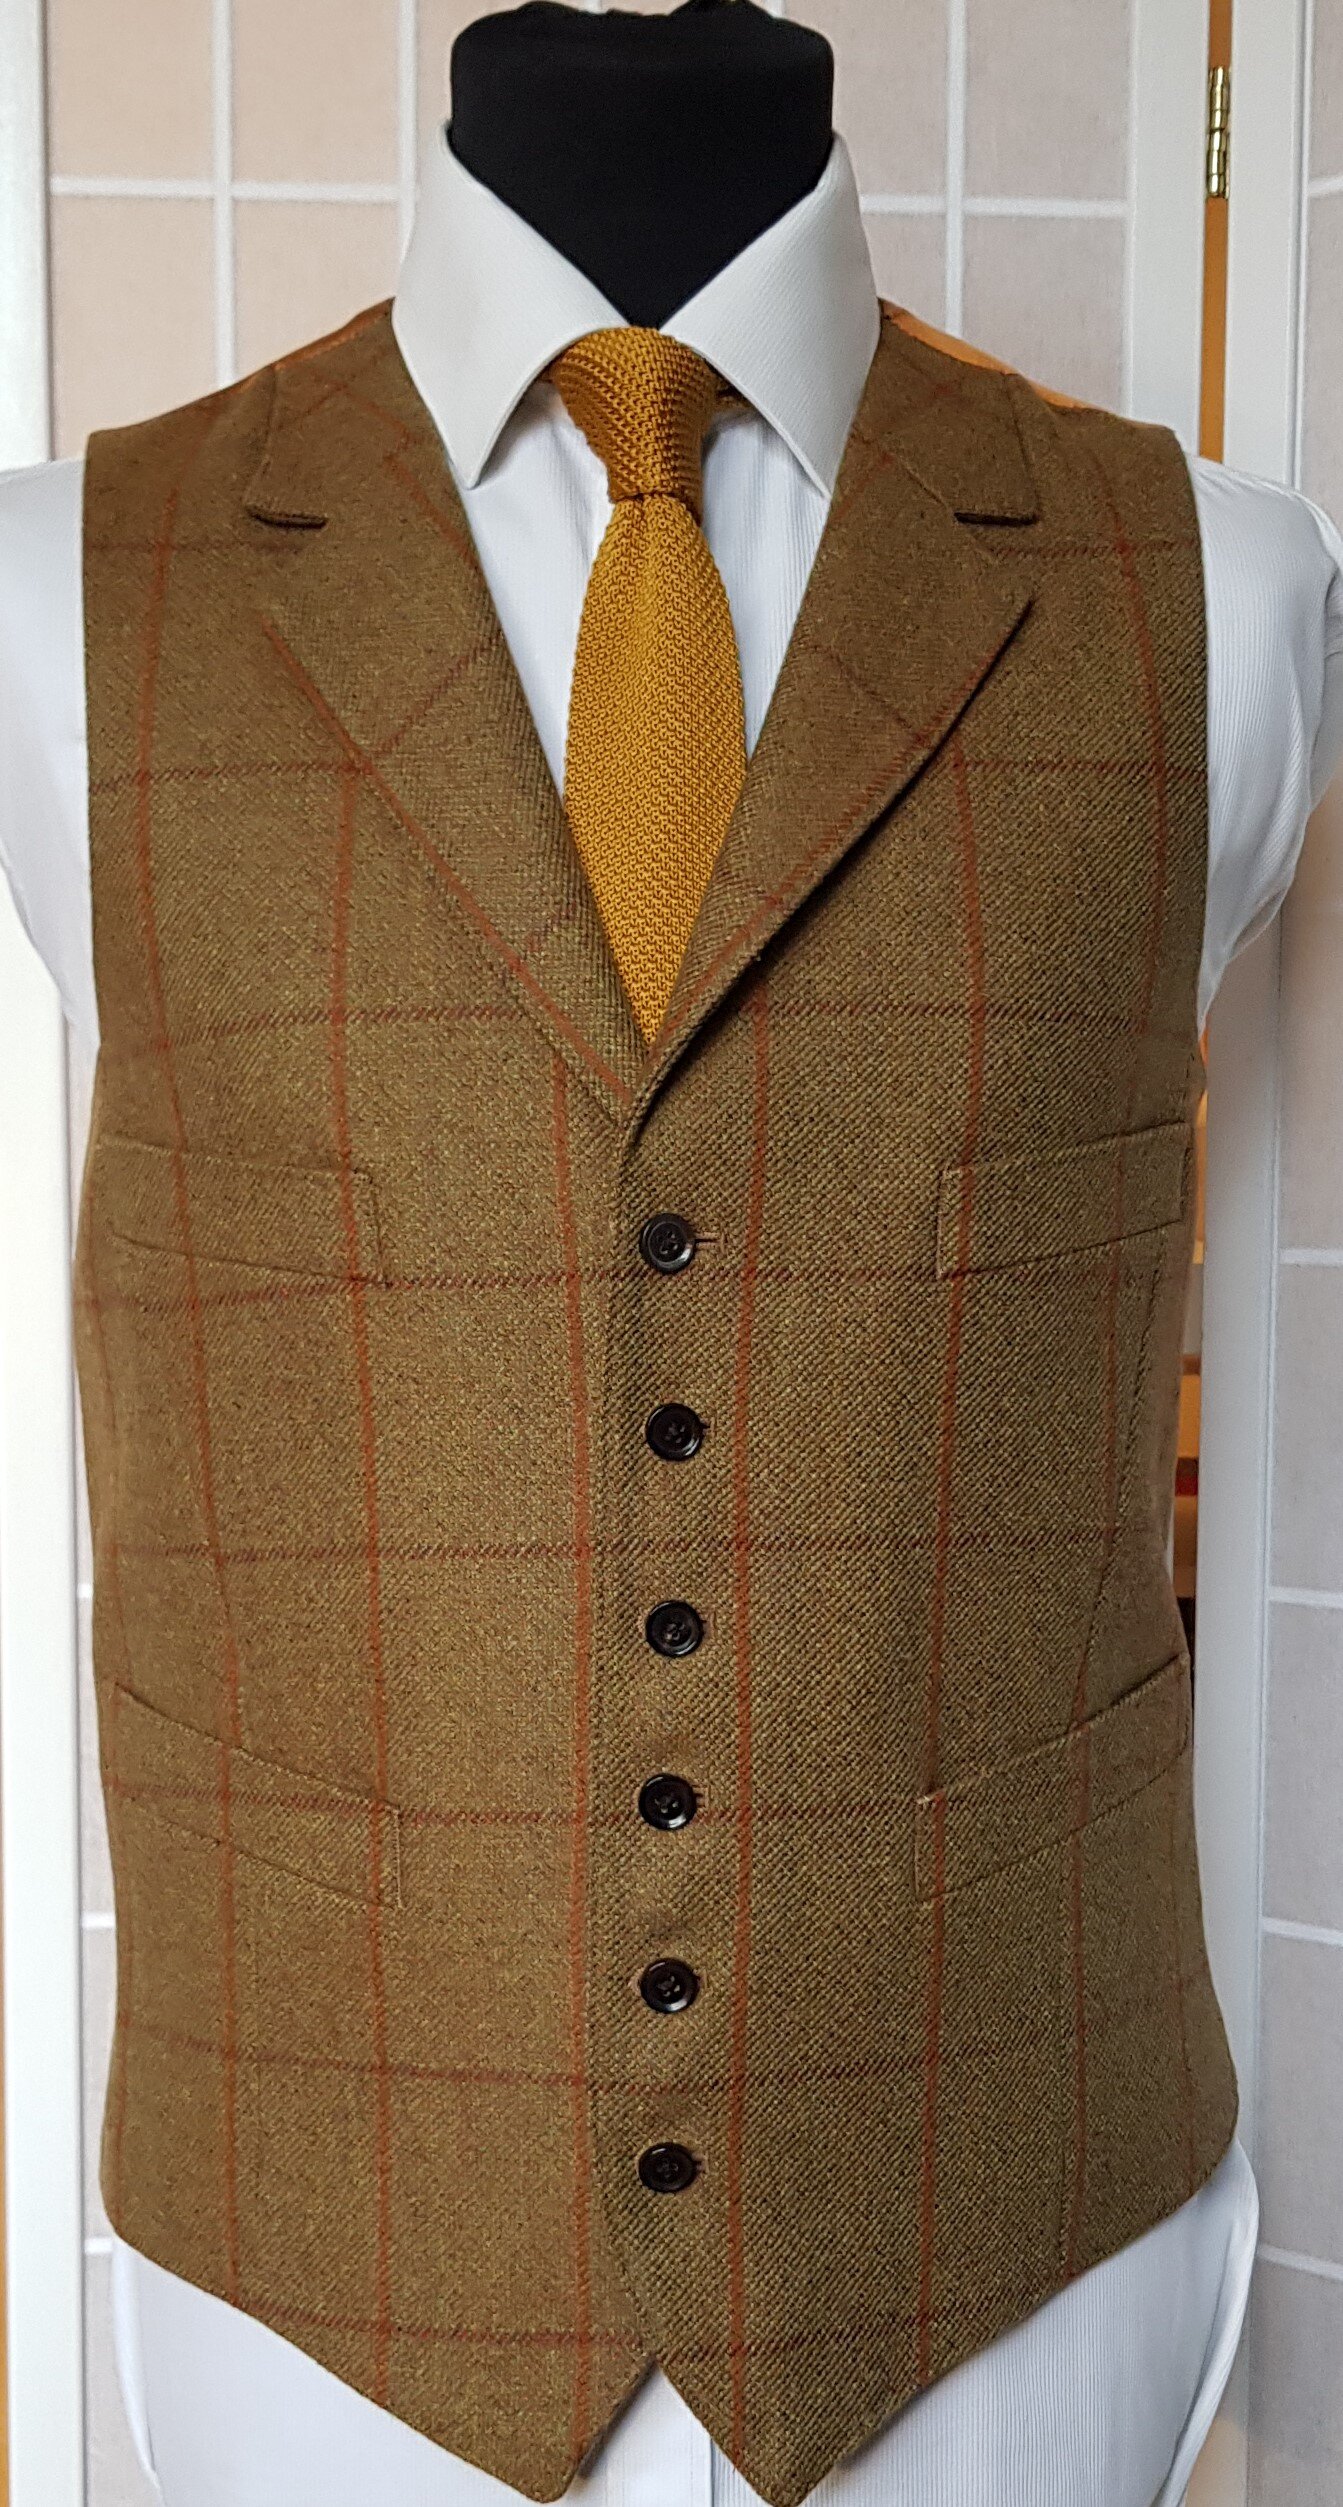 3 piece suit in Glenroyal tweed (2).jpg